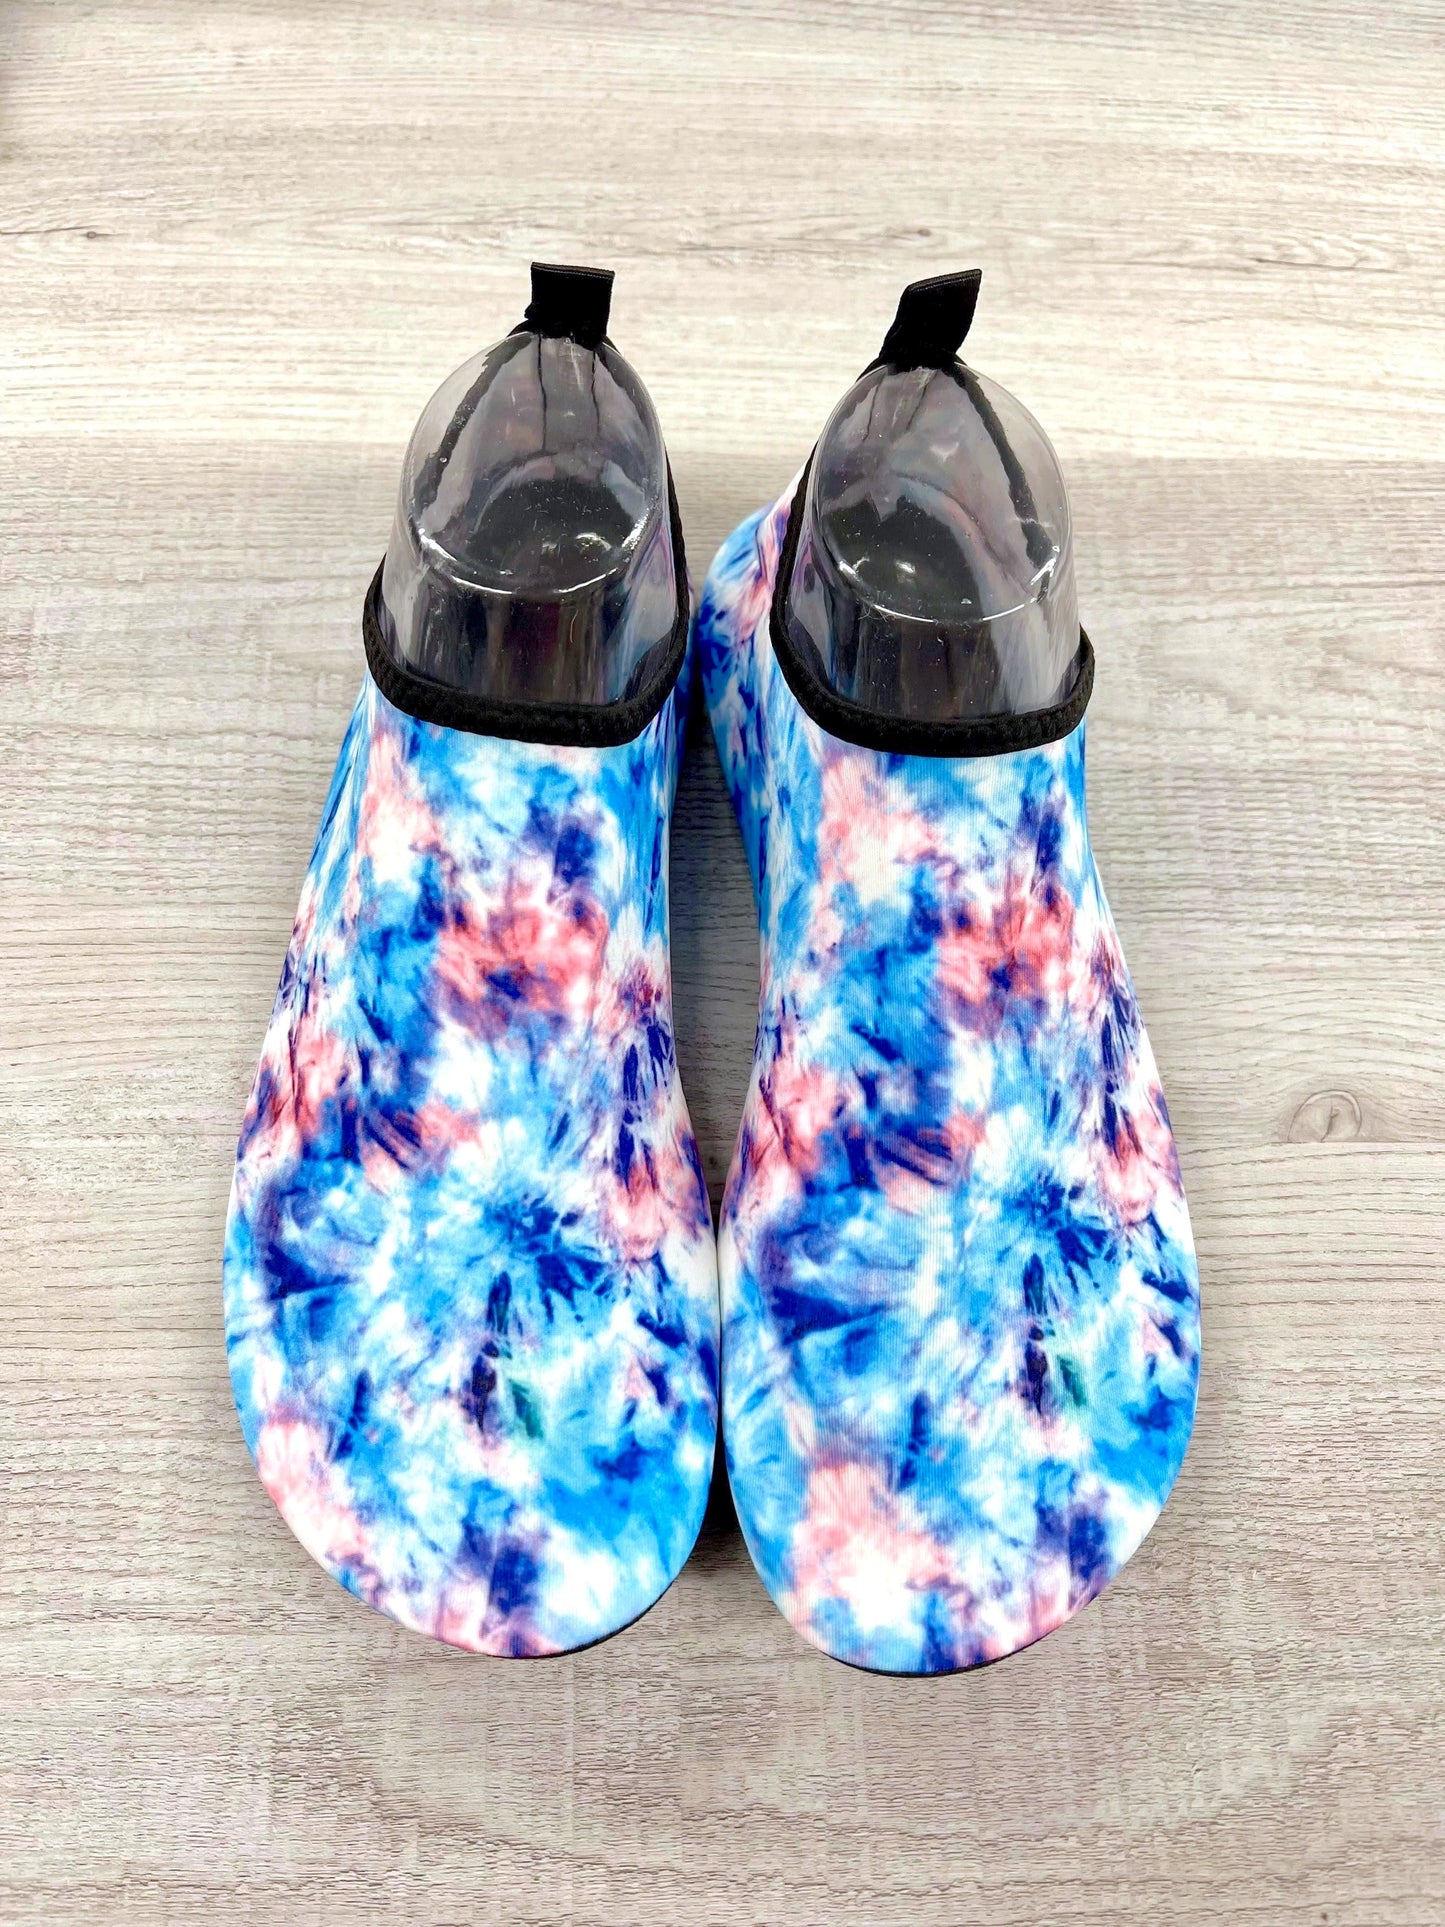 RTS - Cotton Candy Tie Dye Swim Shoes